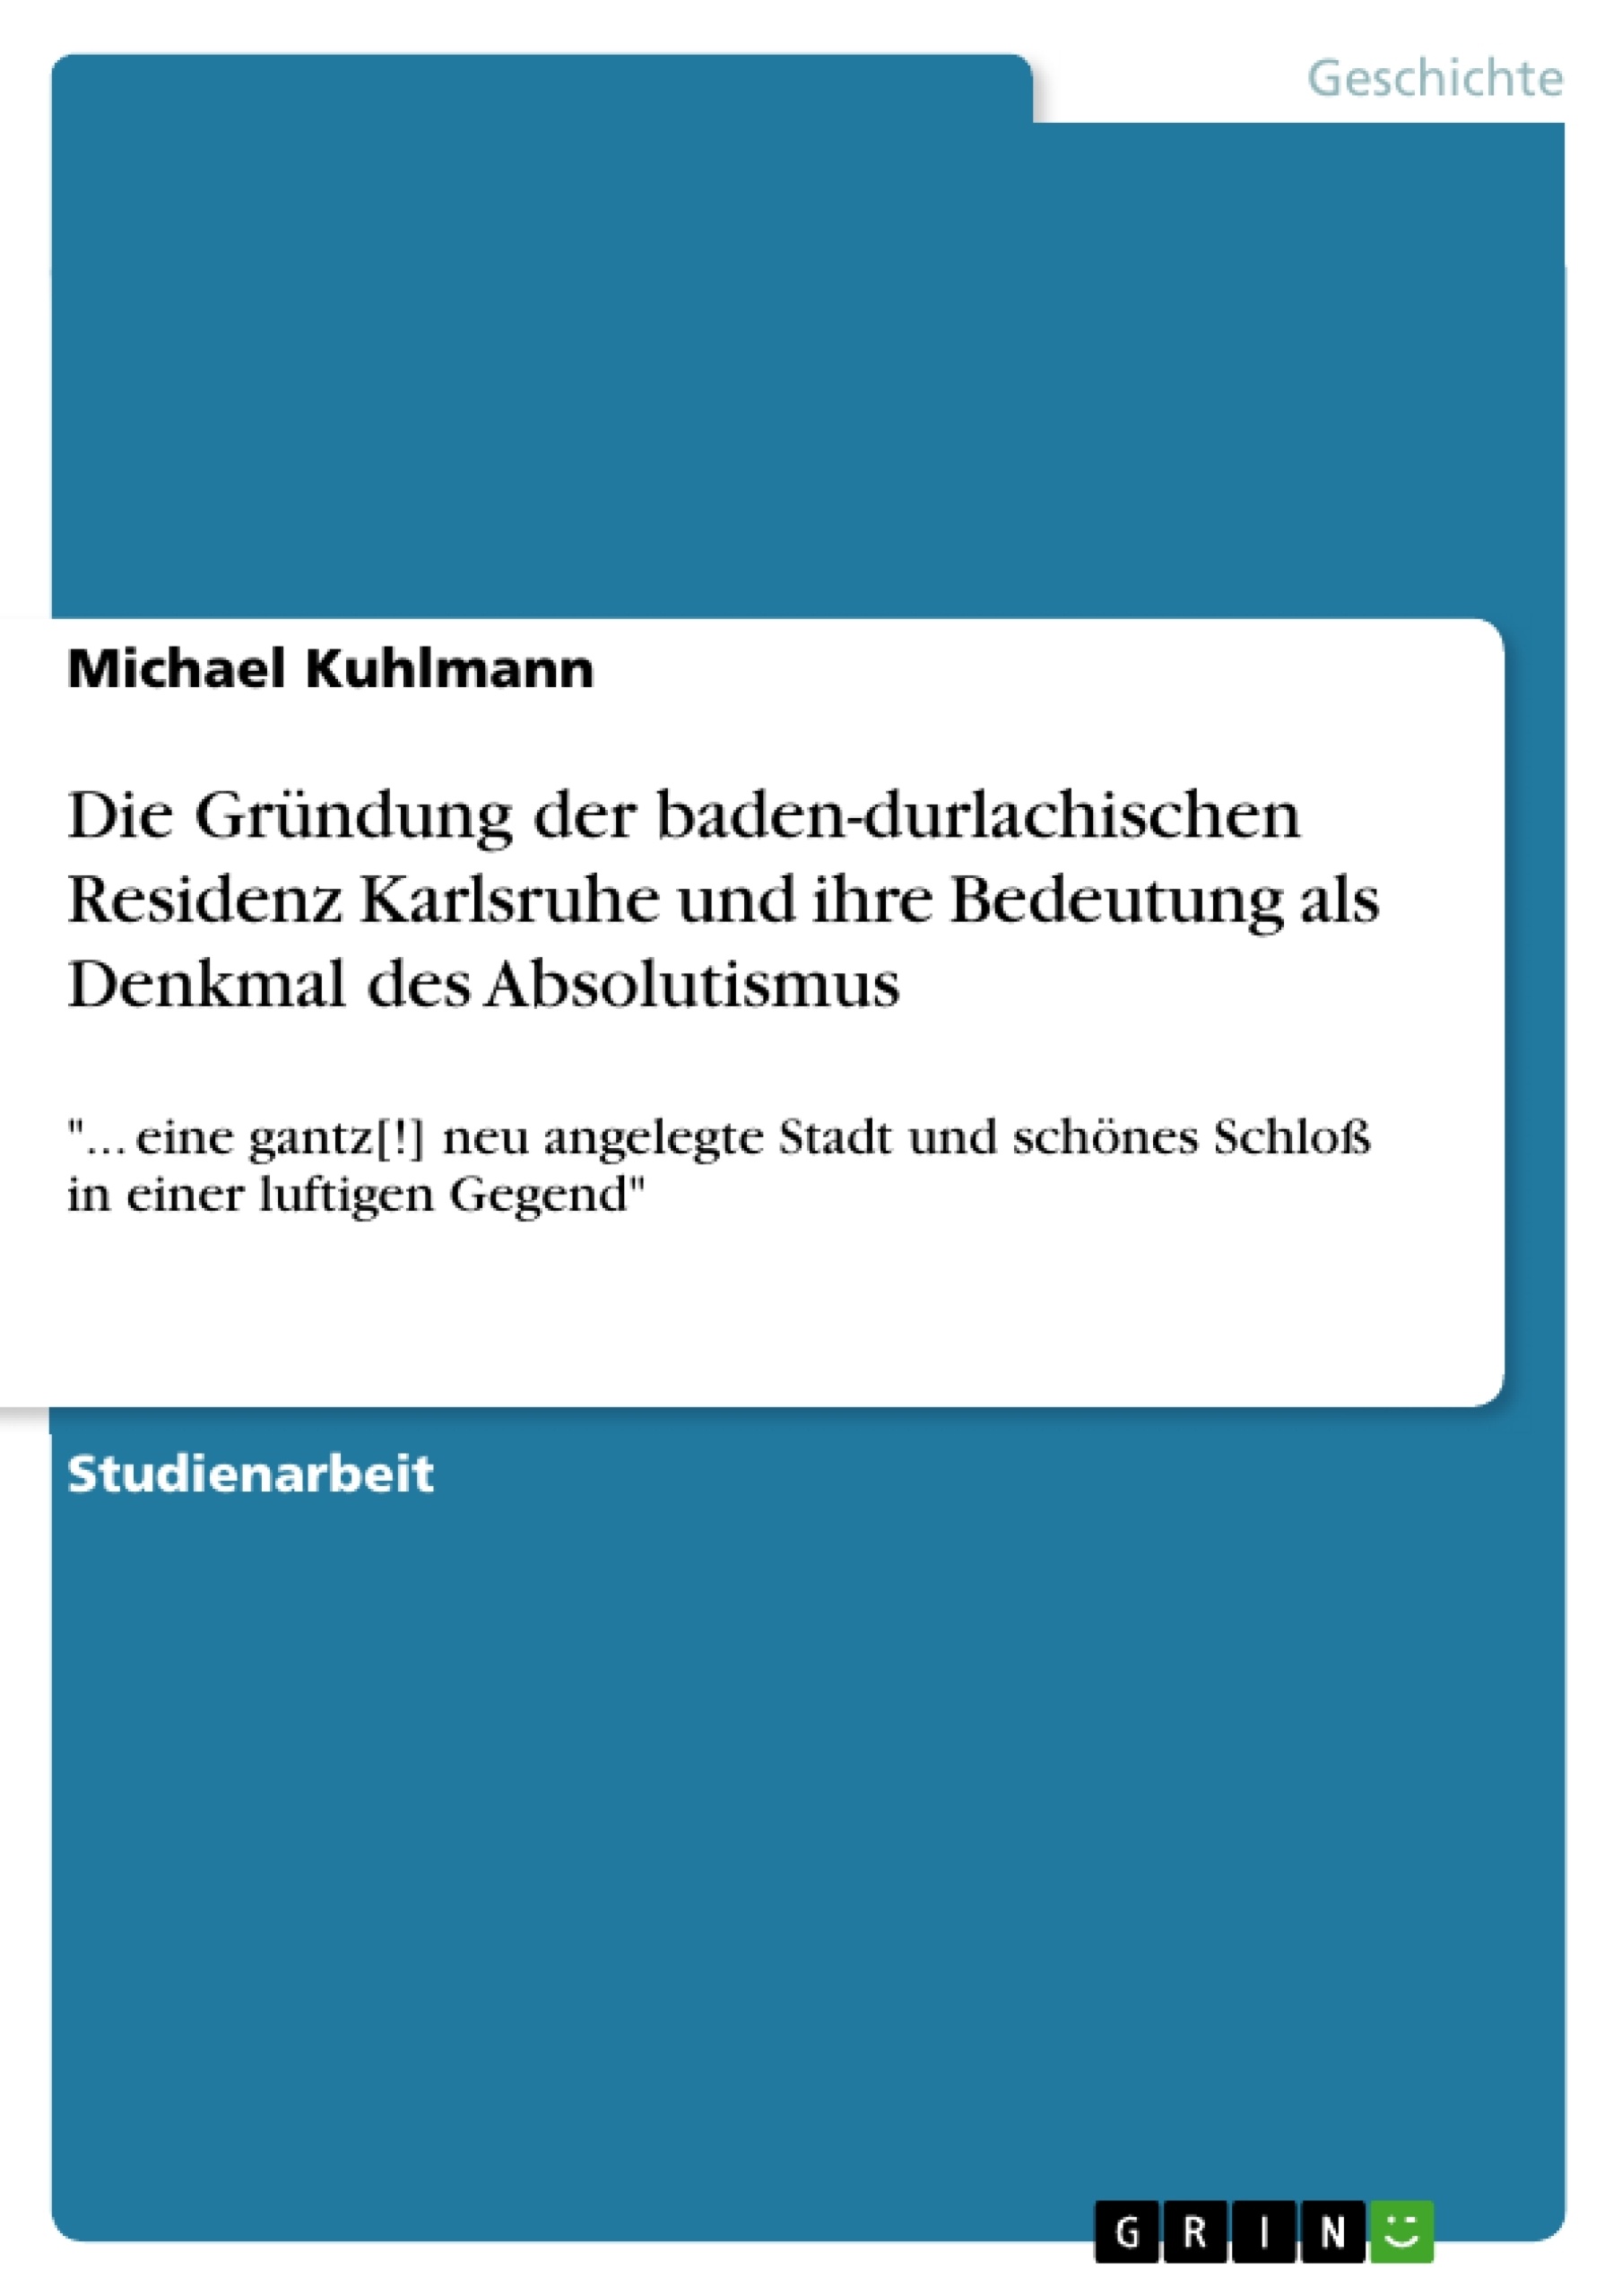 Título: Die Gründung der baden-durlachischen Residenz Karlsruhe und ihre Bedeutung als Denkmal des Absolutismus